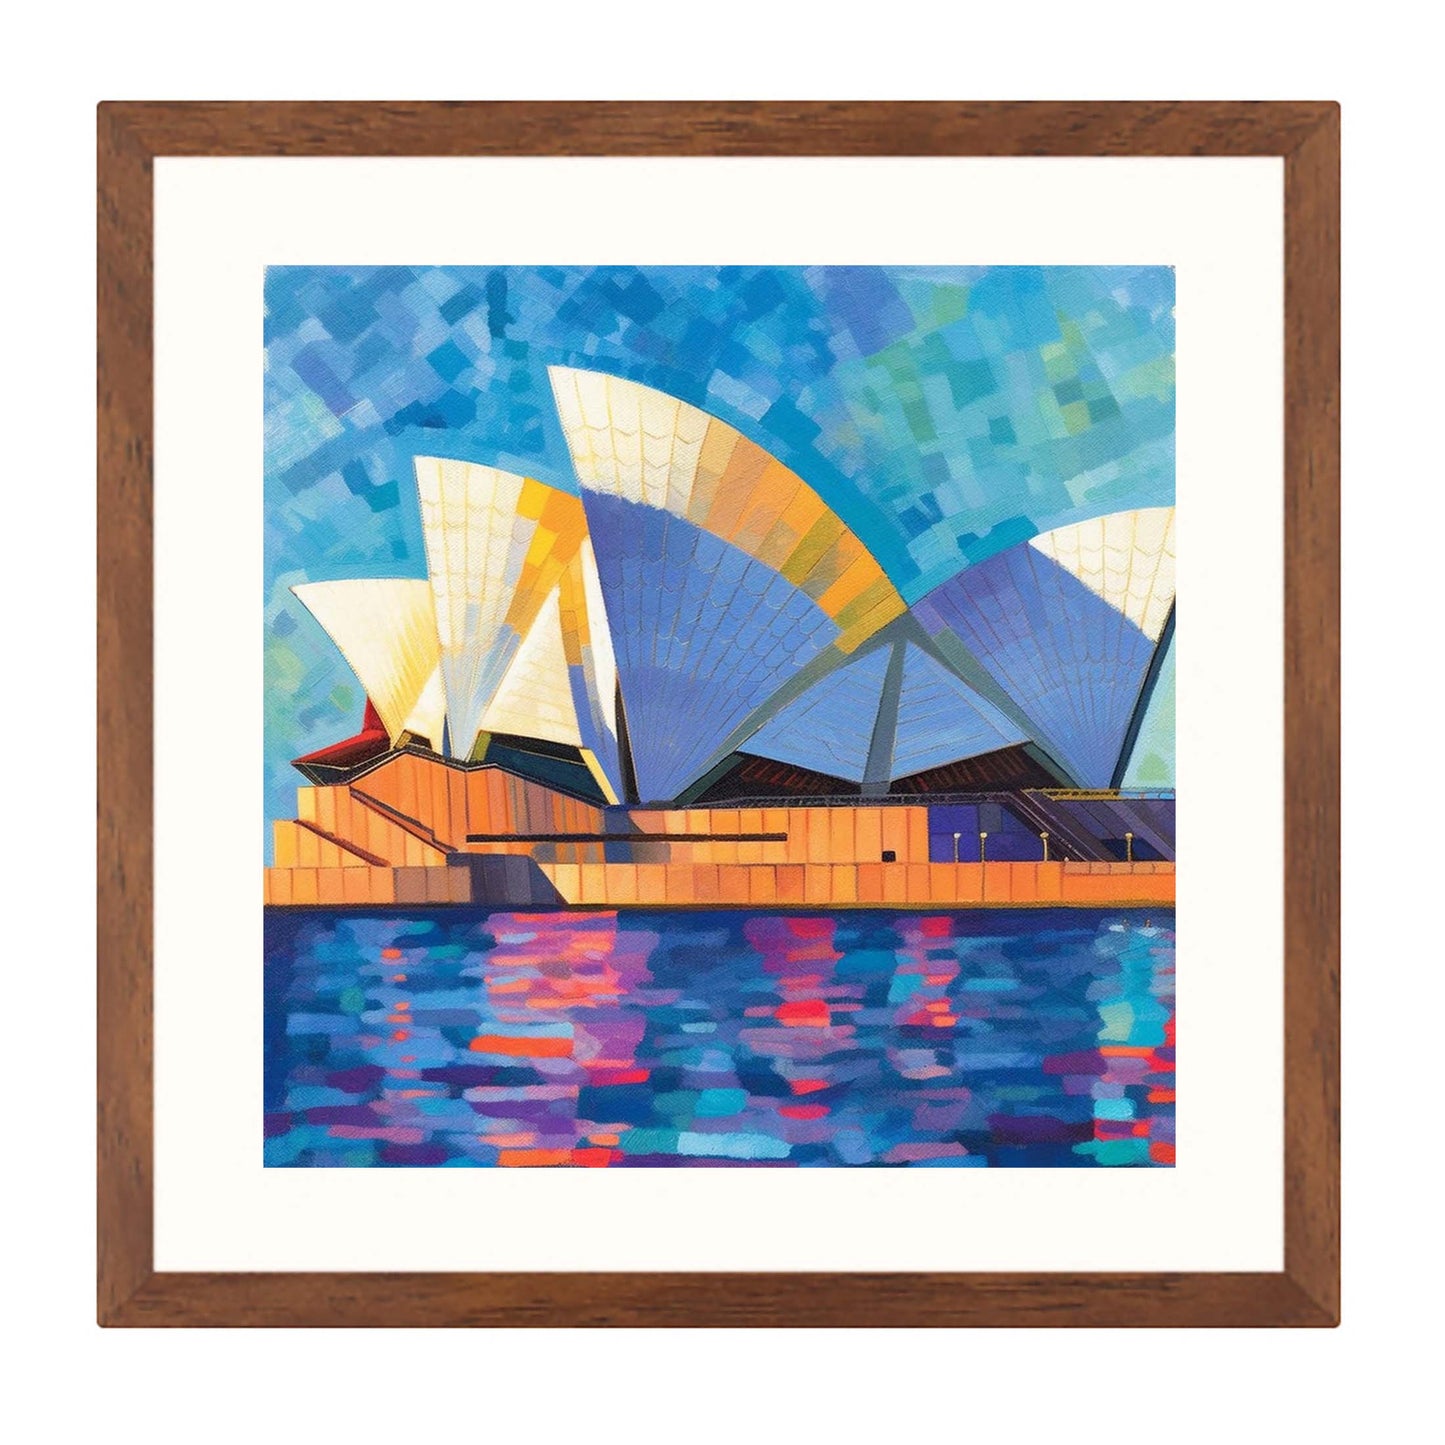 Sydney - Opera House - Wandbild in der Stilrichtung des Impressionismus